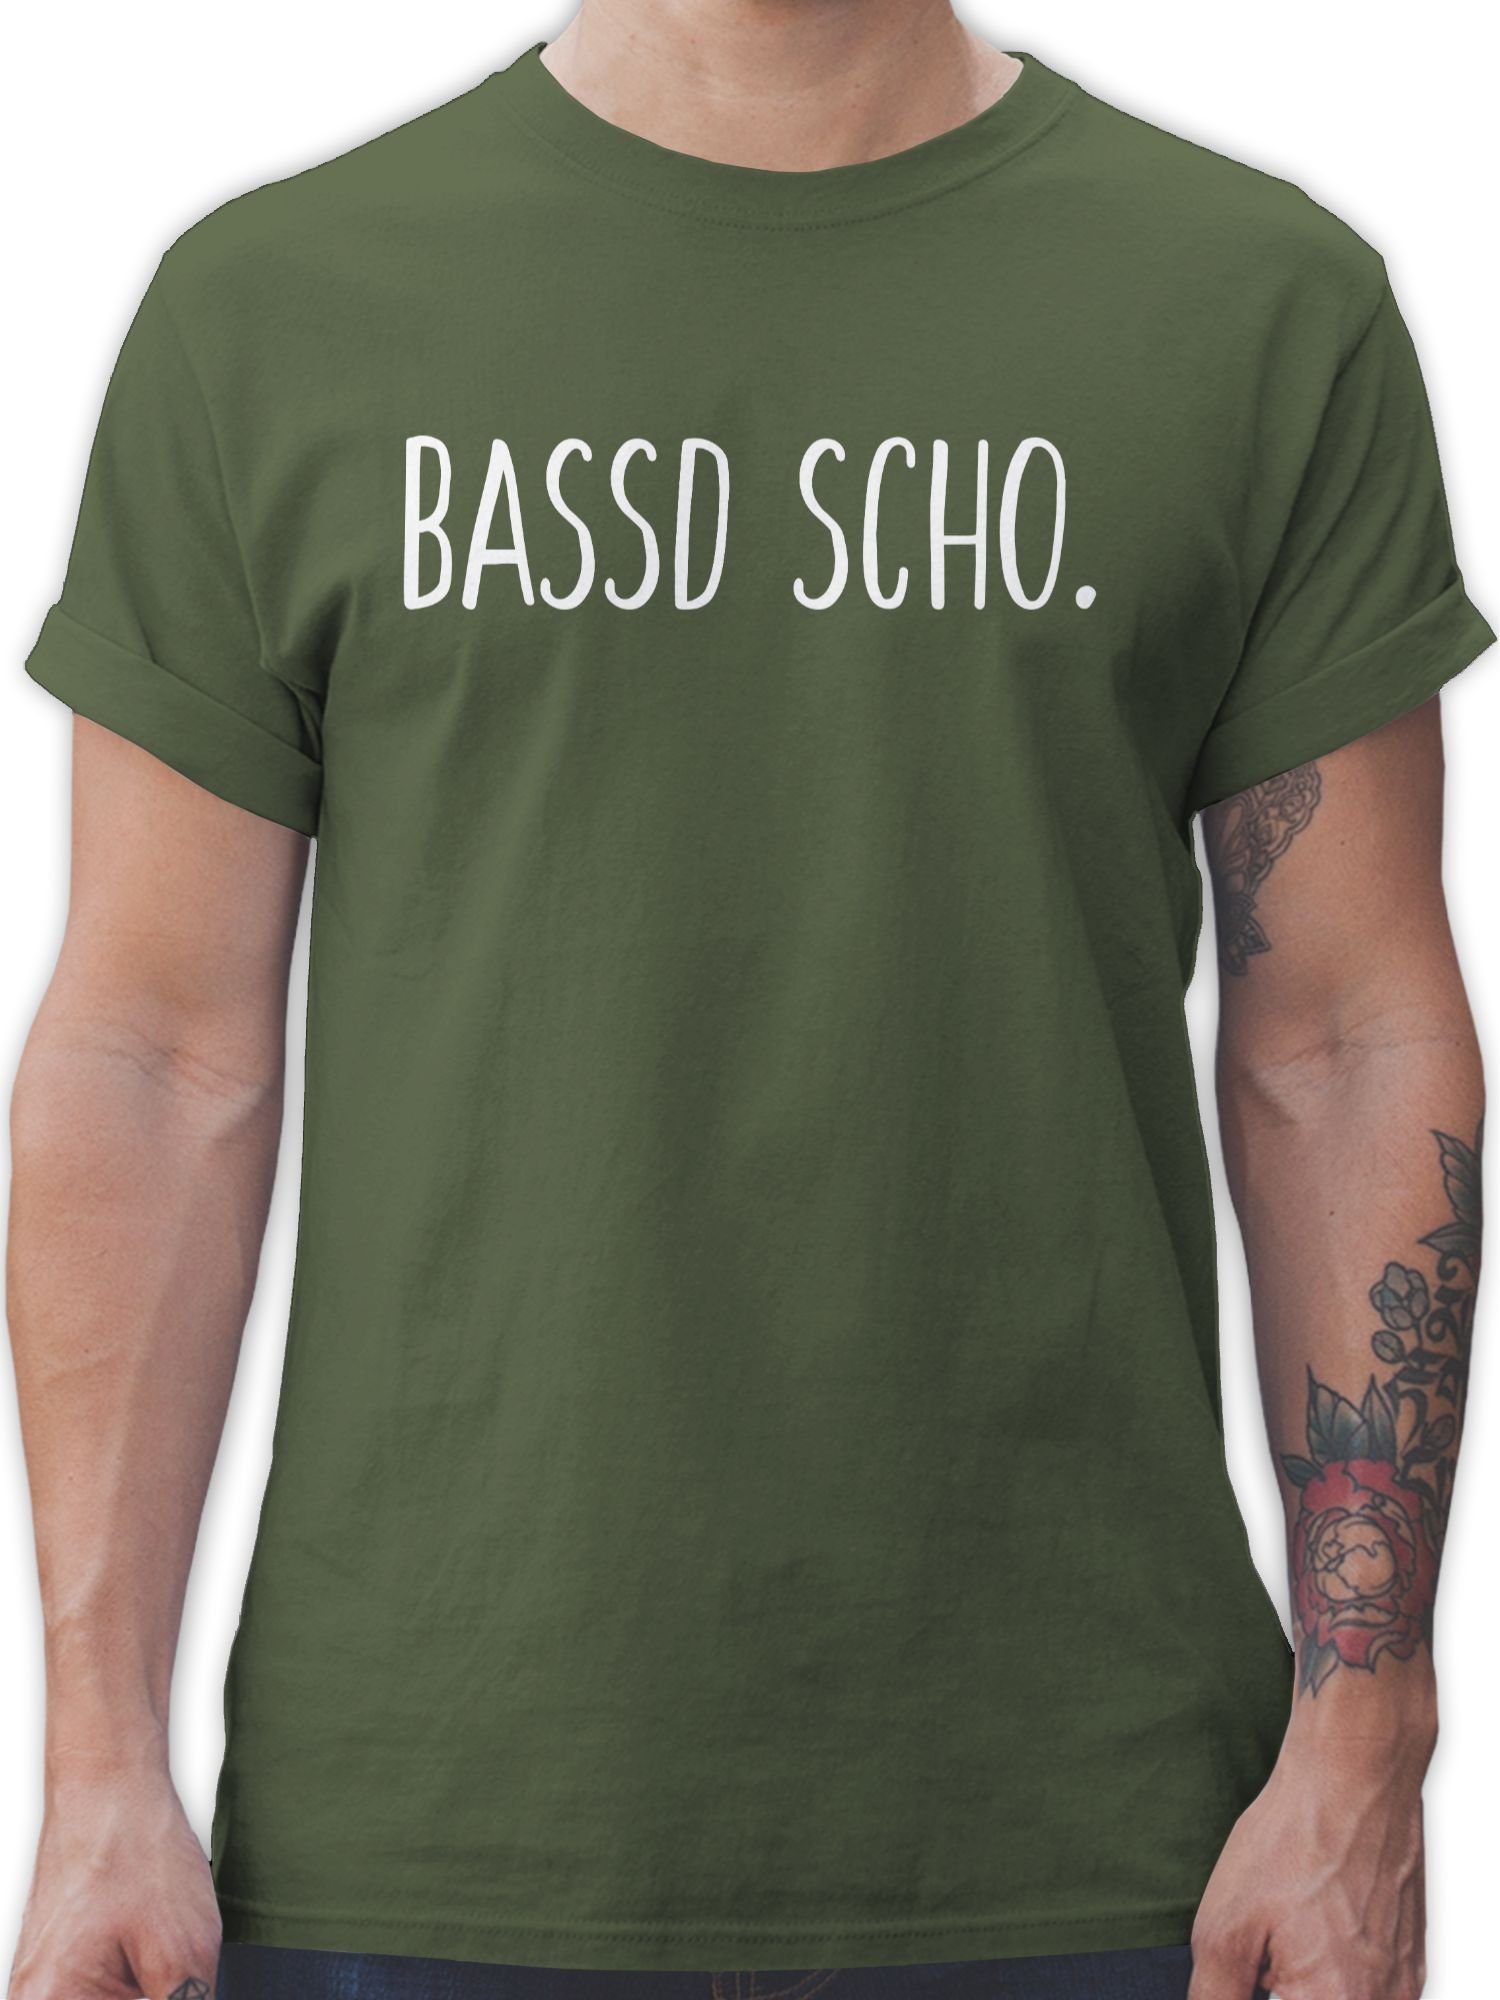 2 Army scho Bassd Statement Sprüche Shirtracer Grün T-Shirt